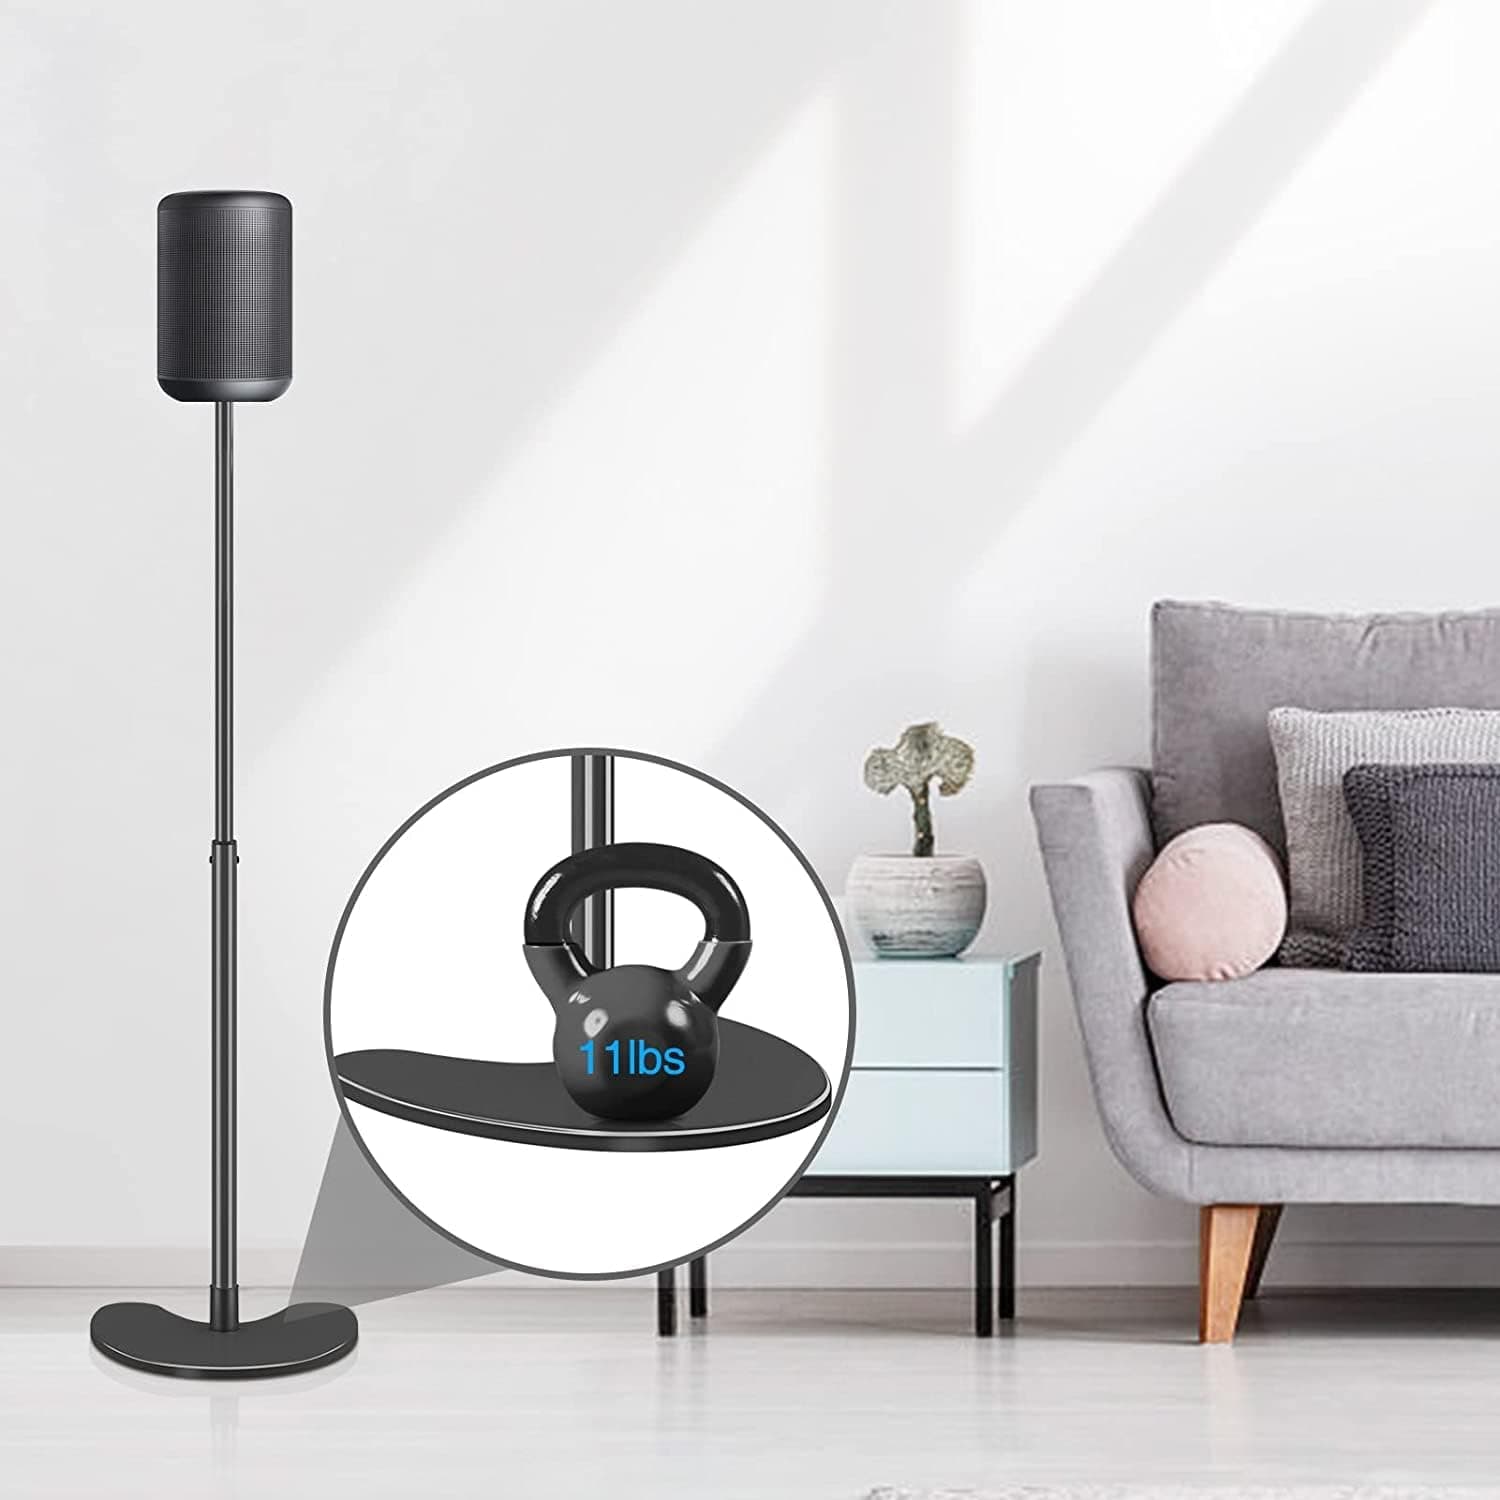 Audio Keeper 2*11 LBS Pair Floor Speaker Stands with Adjustable Mounts